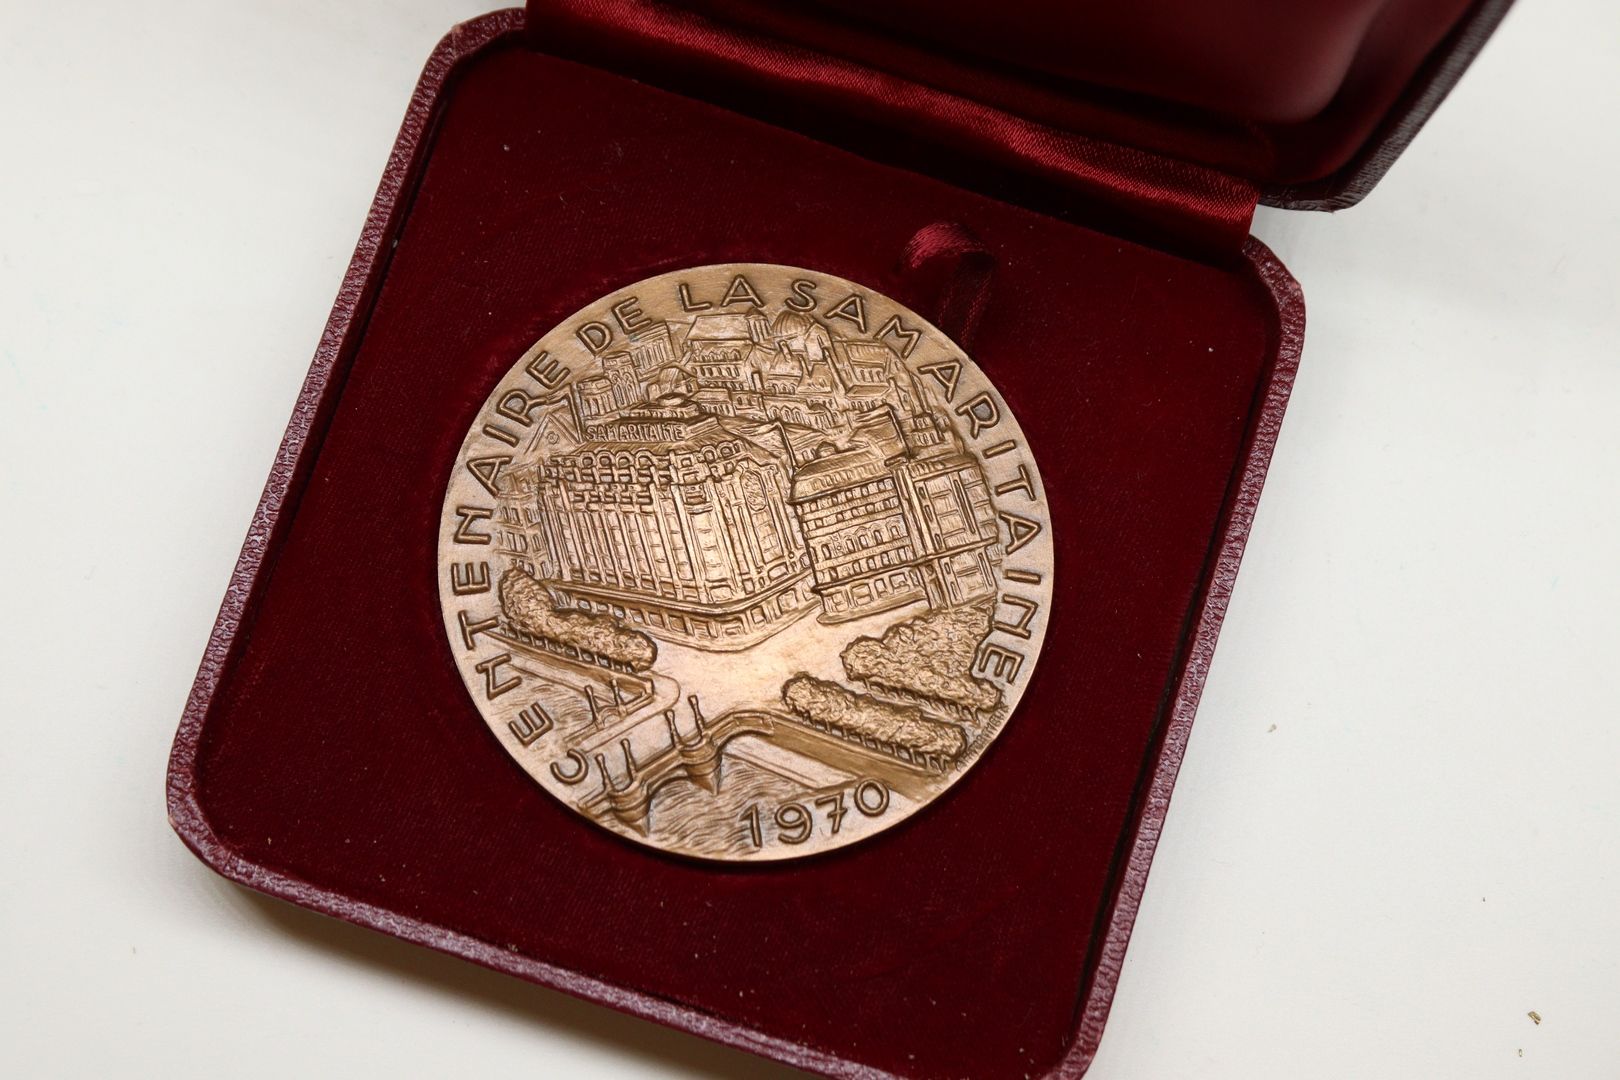 Null Table medal in bronze of ap. Torcheux.

Obverse: CENTENAIRE DE LA SAMARITAI&hellip;